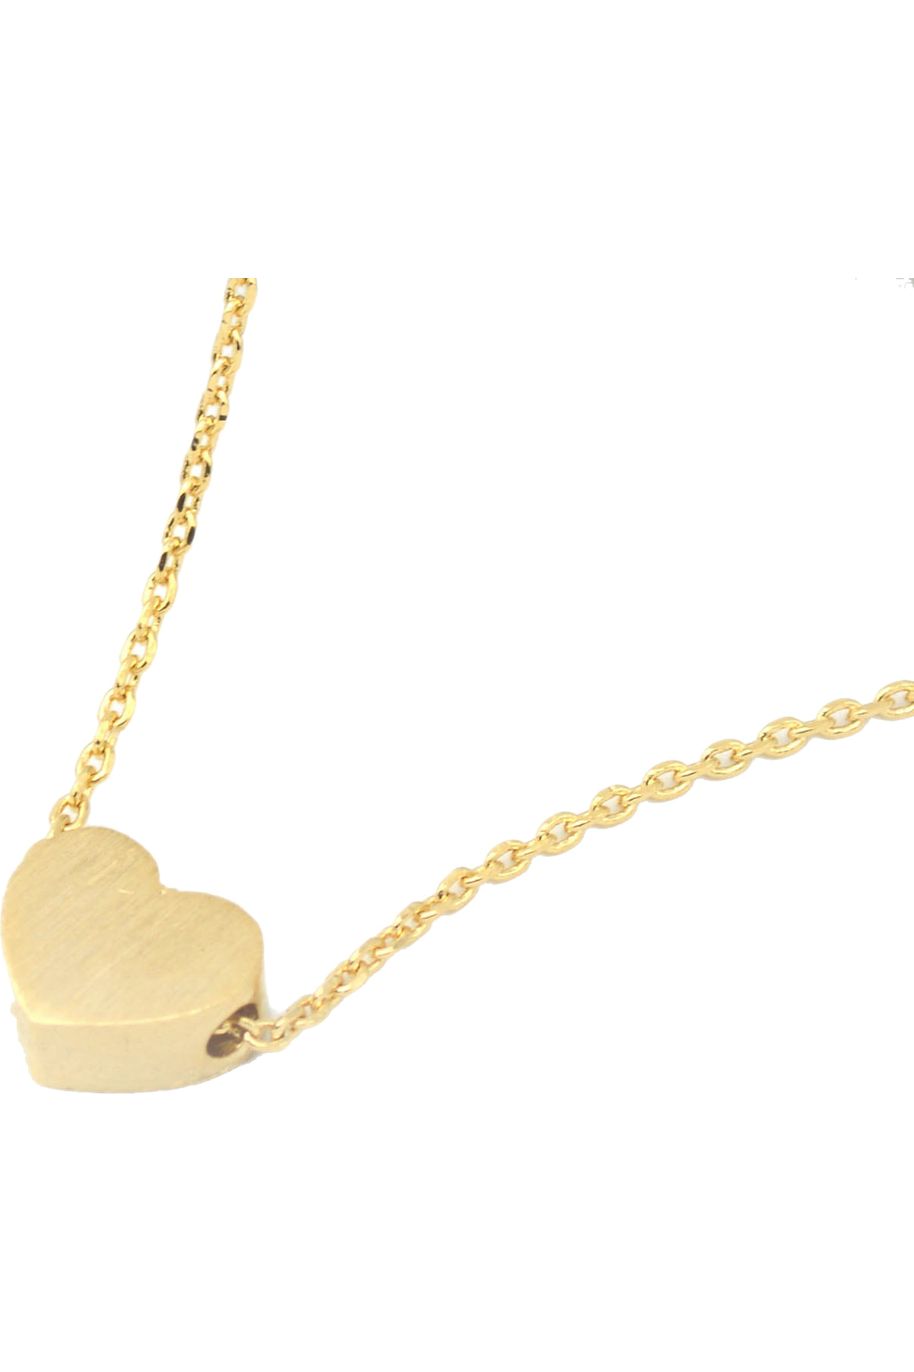 Small Heart Necklace Matt Gold NLK08G